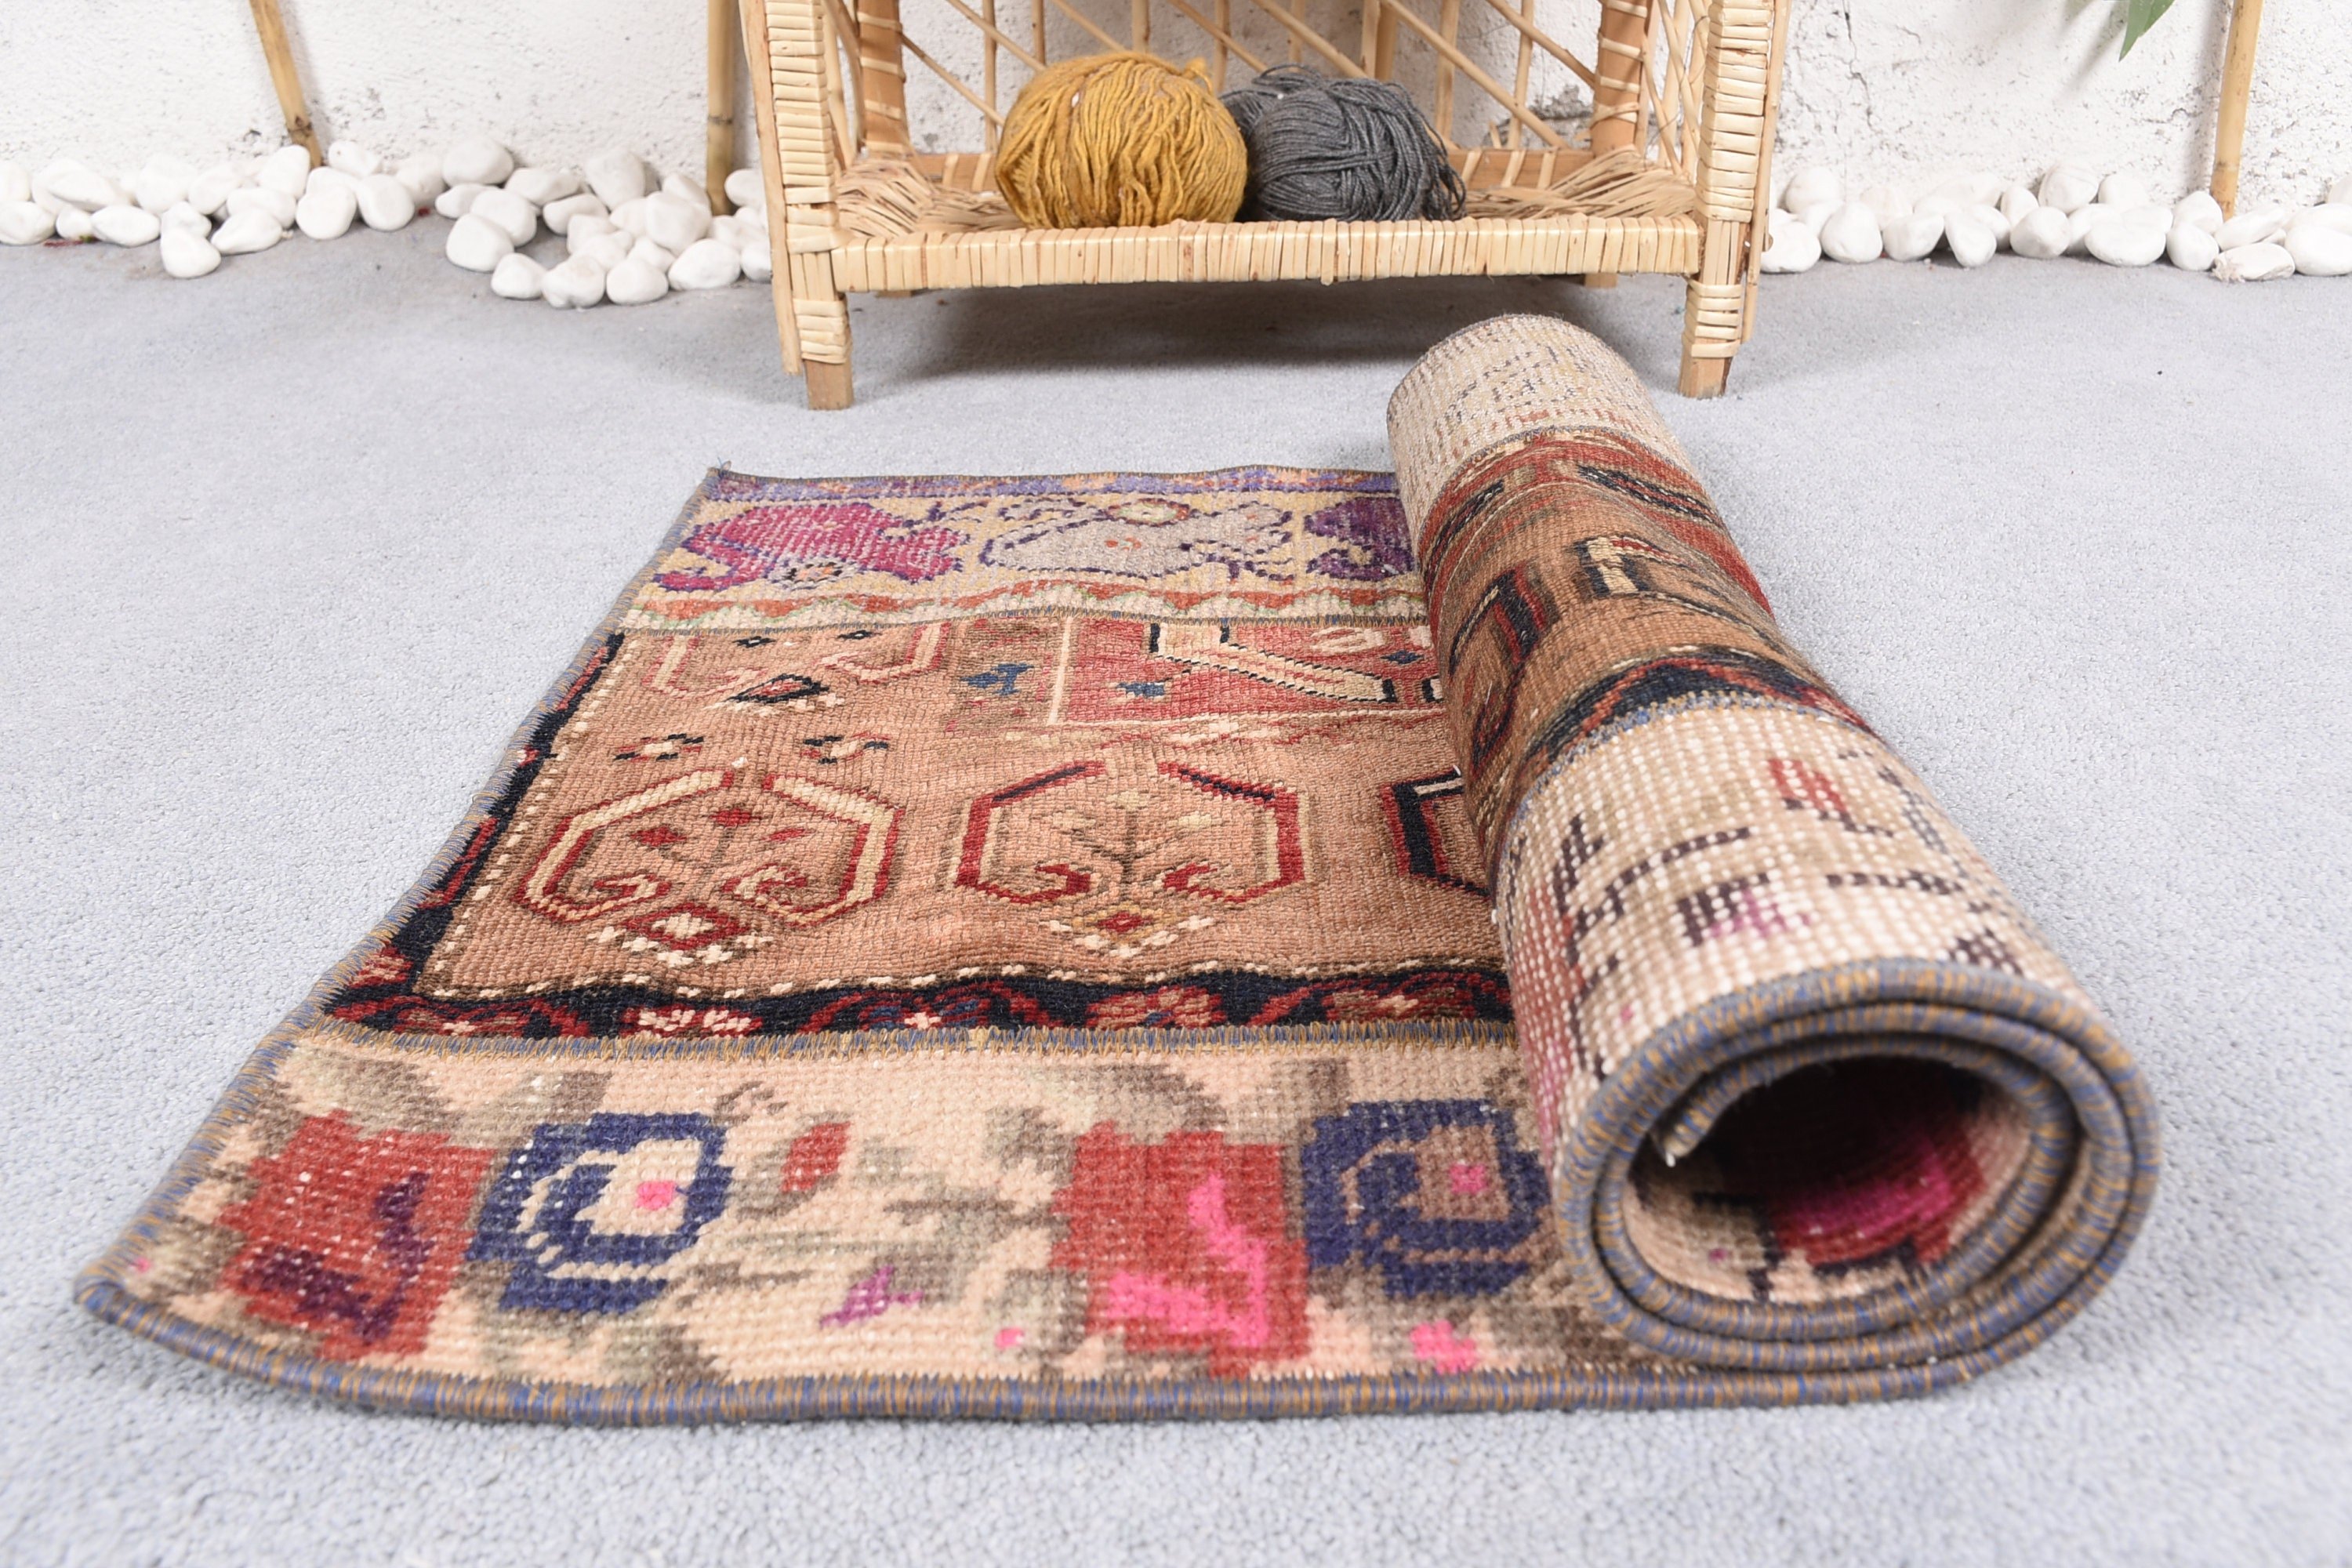 Turkish Rugs, Decorative Rug, Vintage Rug, Brown Wool Rug, Bathroom Rug, Rugs for Entry, Bedroom Rug, 1.8x3.5 ft Small Rug, Wool Rug